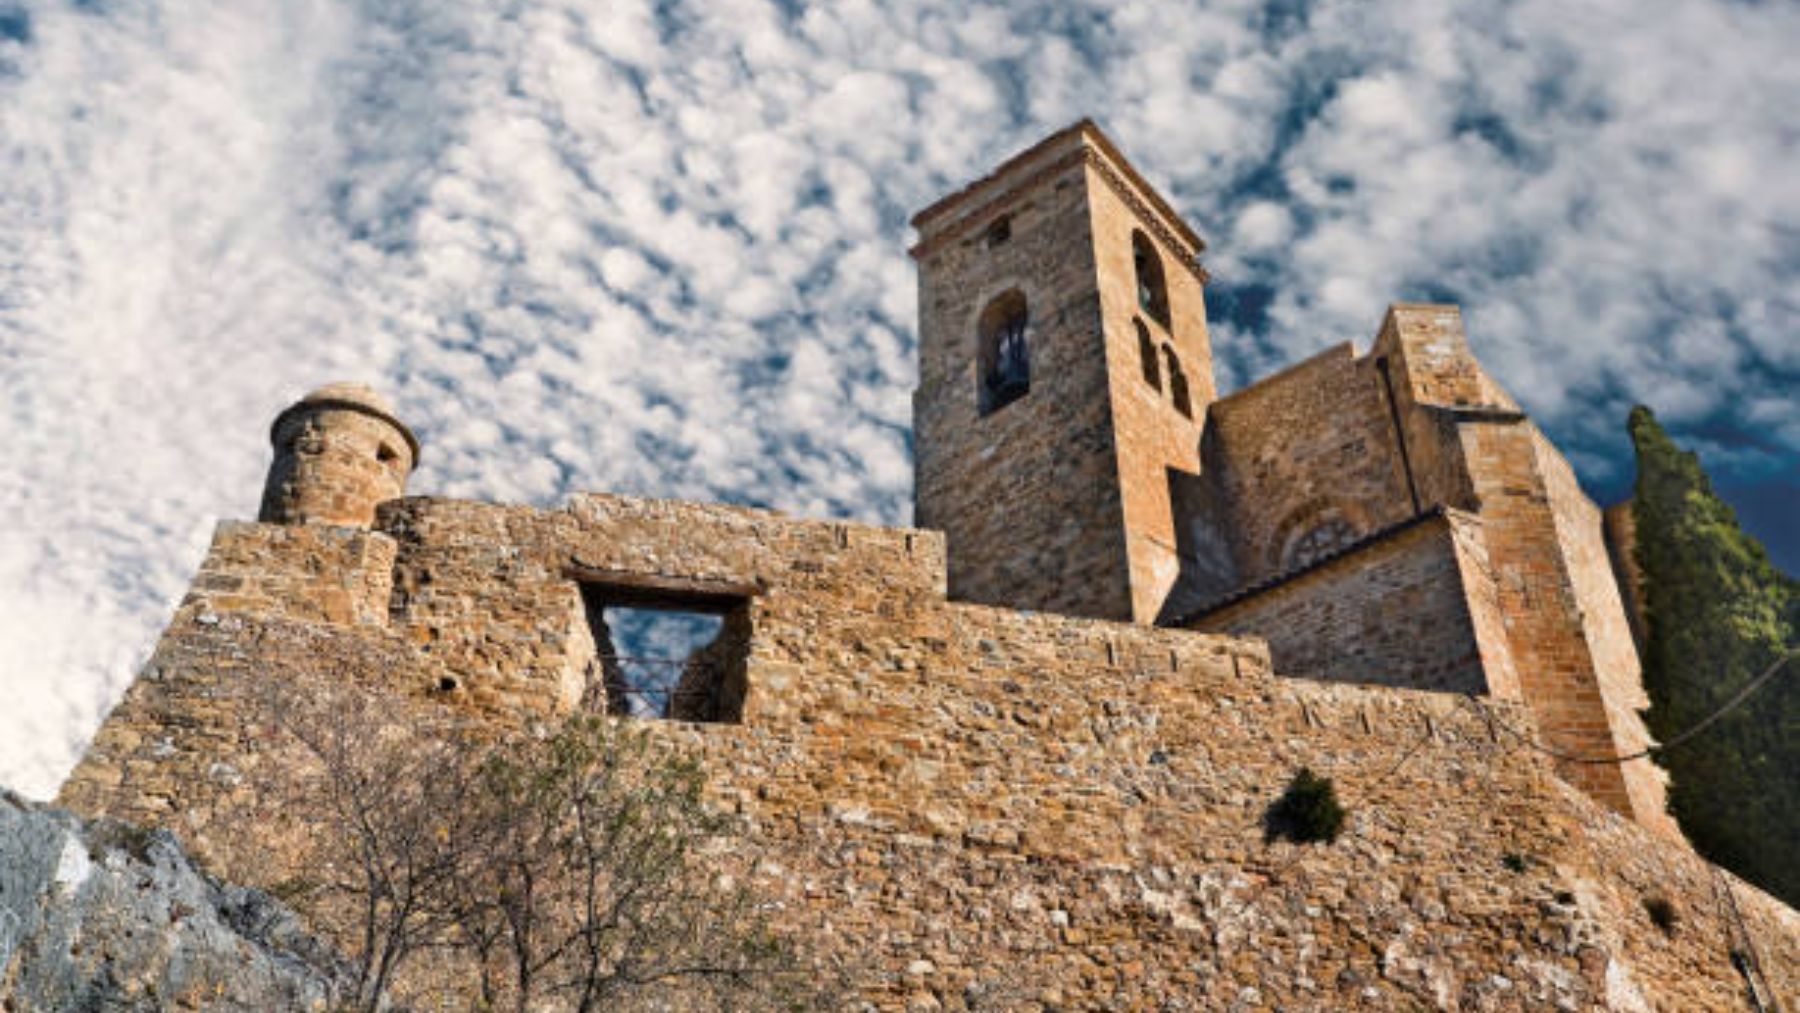 El castillo de Benabarre, uno de los pueblos medievales con más encanto